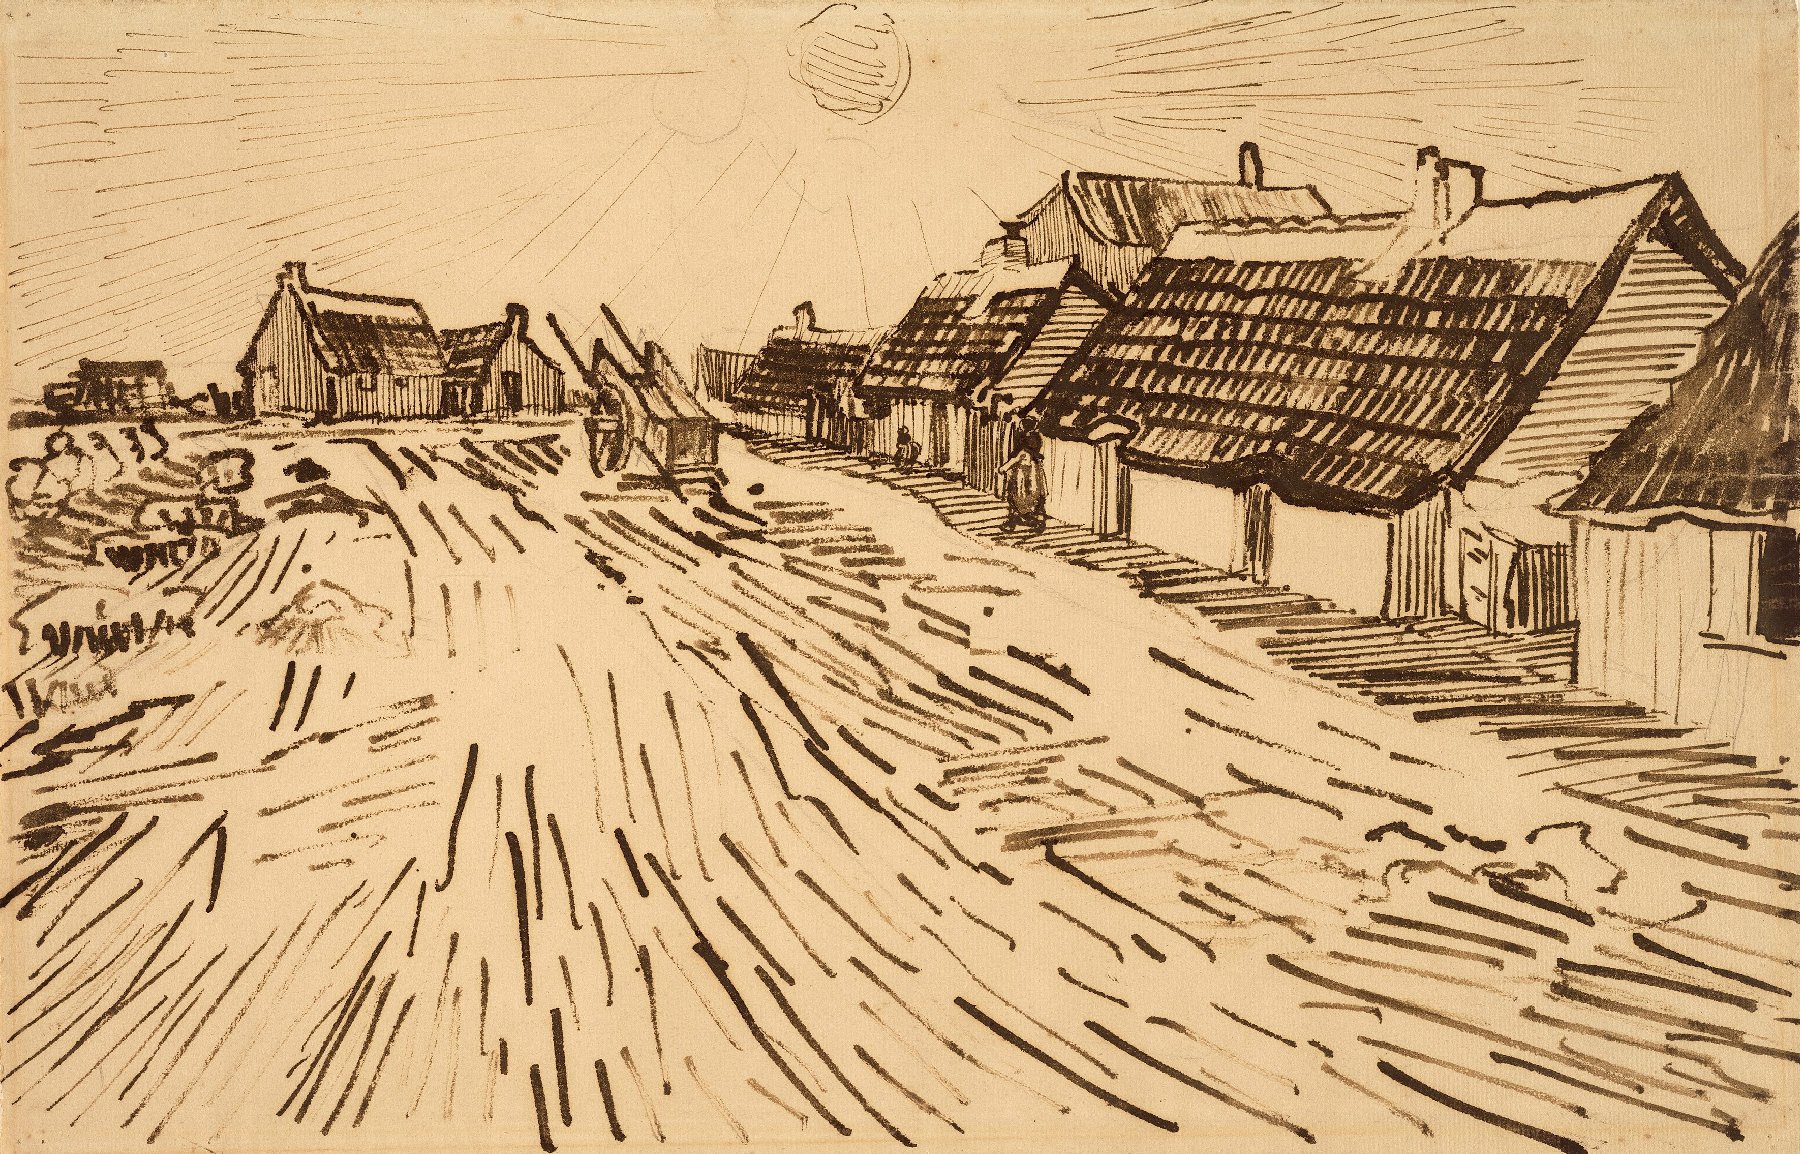 Huizen in de zon in Les-Saintes-Maries-de-la-Mer Vincent van Gogh (1853 - 1890), Arles, mei-juni 1888